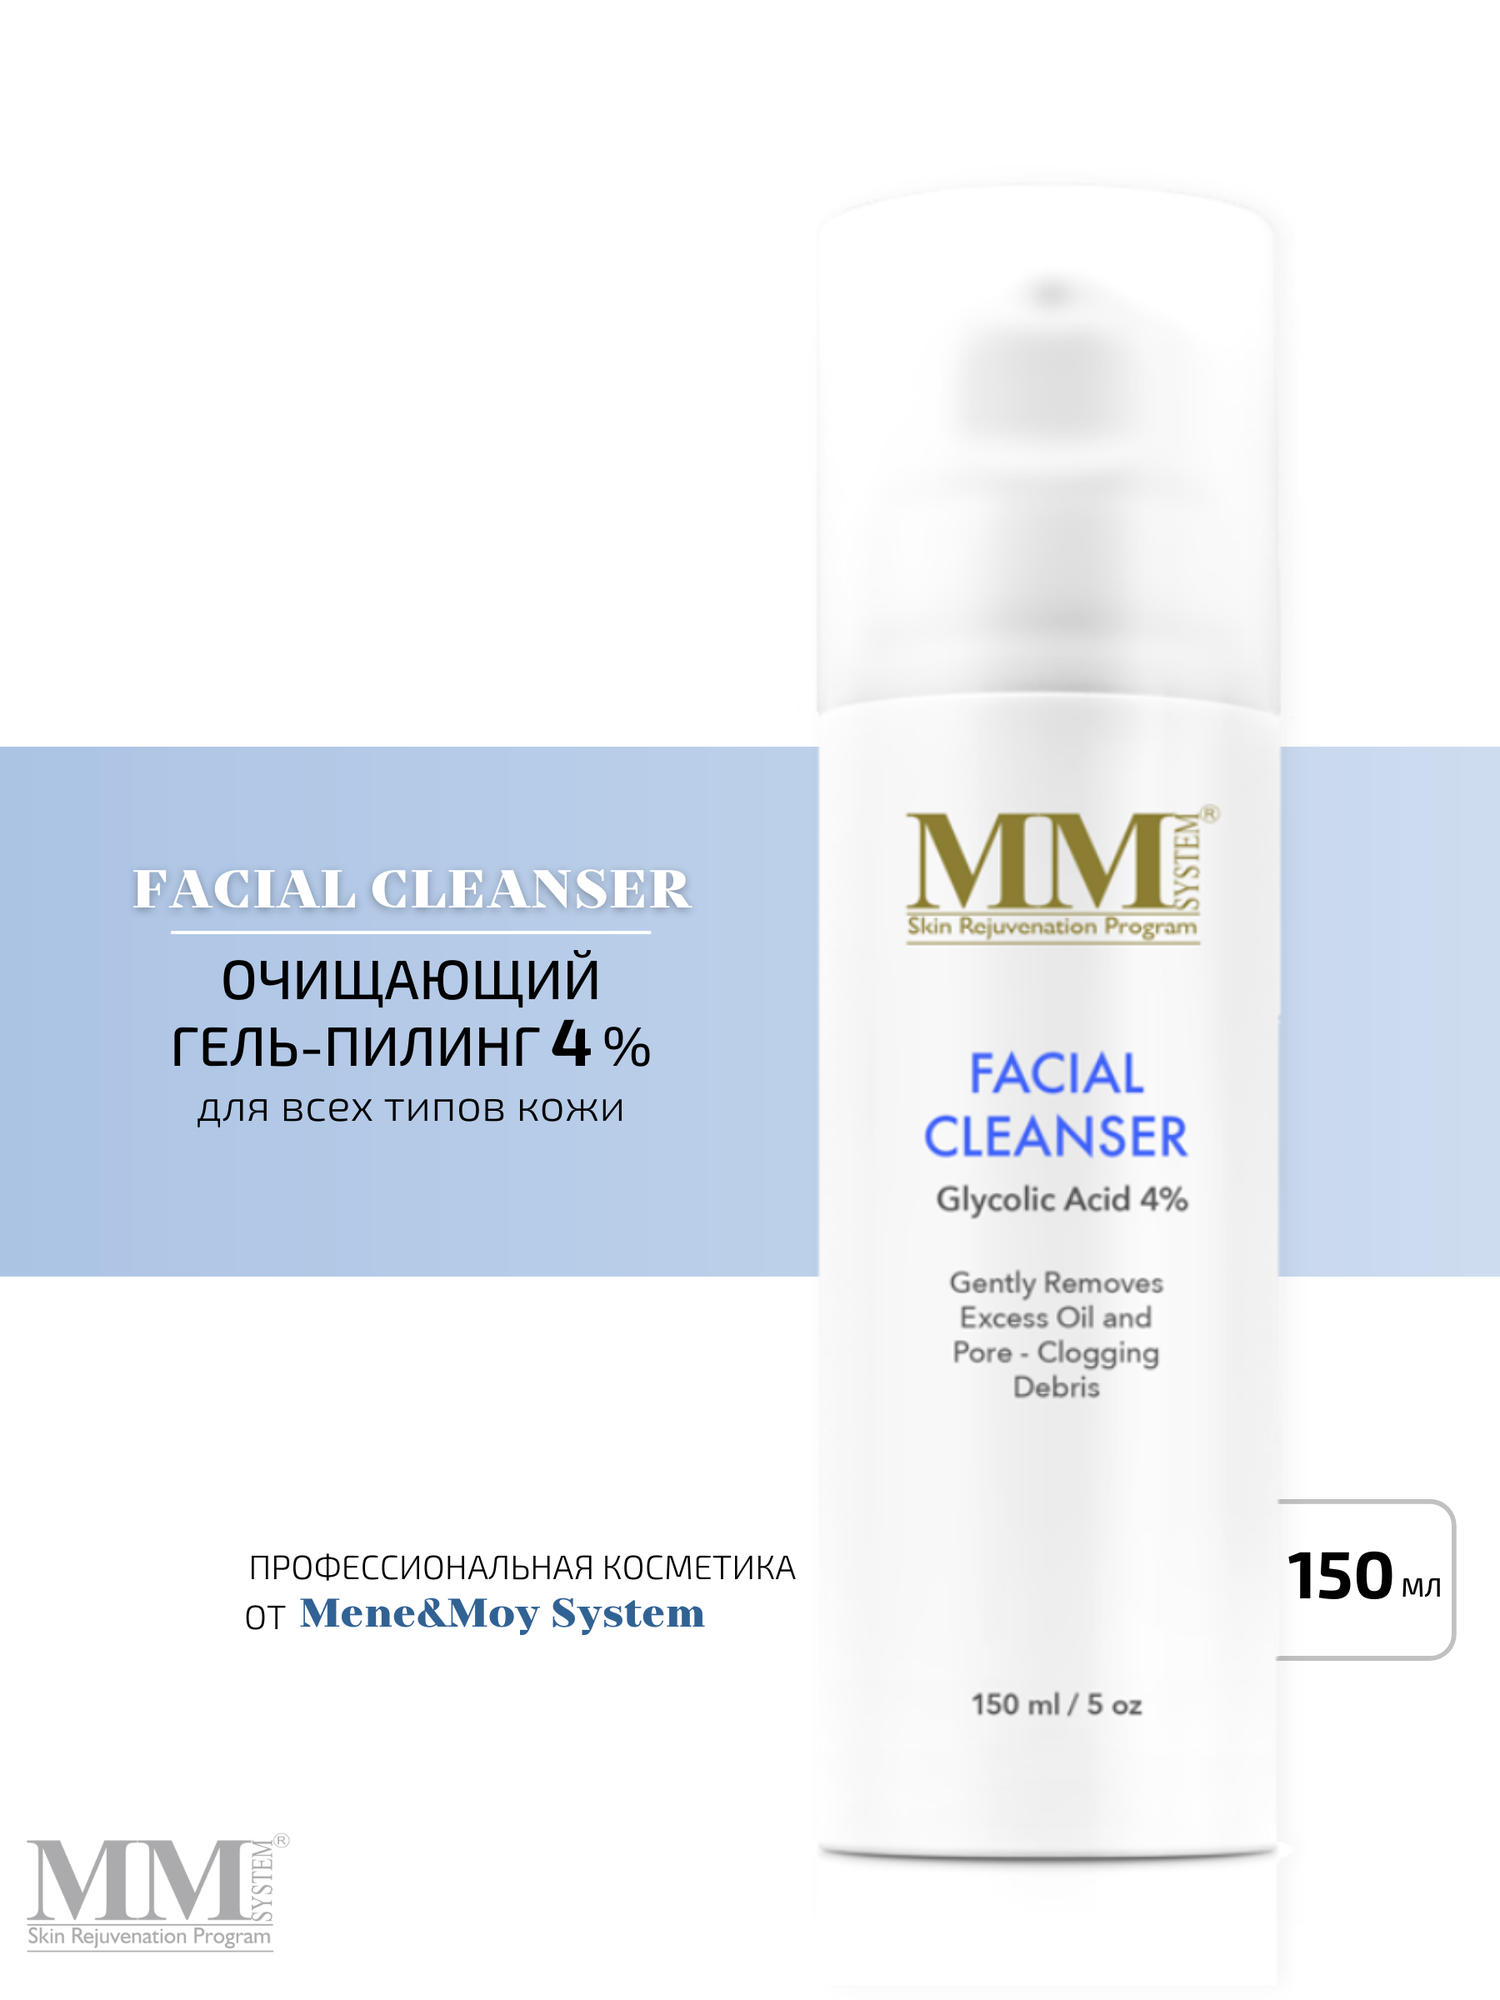 Facial Cleanser 4% - Очищающий гель для лица с гликолевой кислотой (4%)